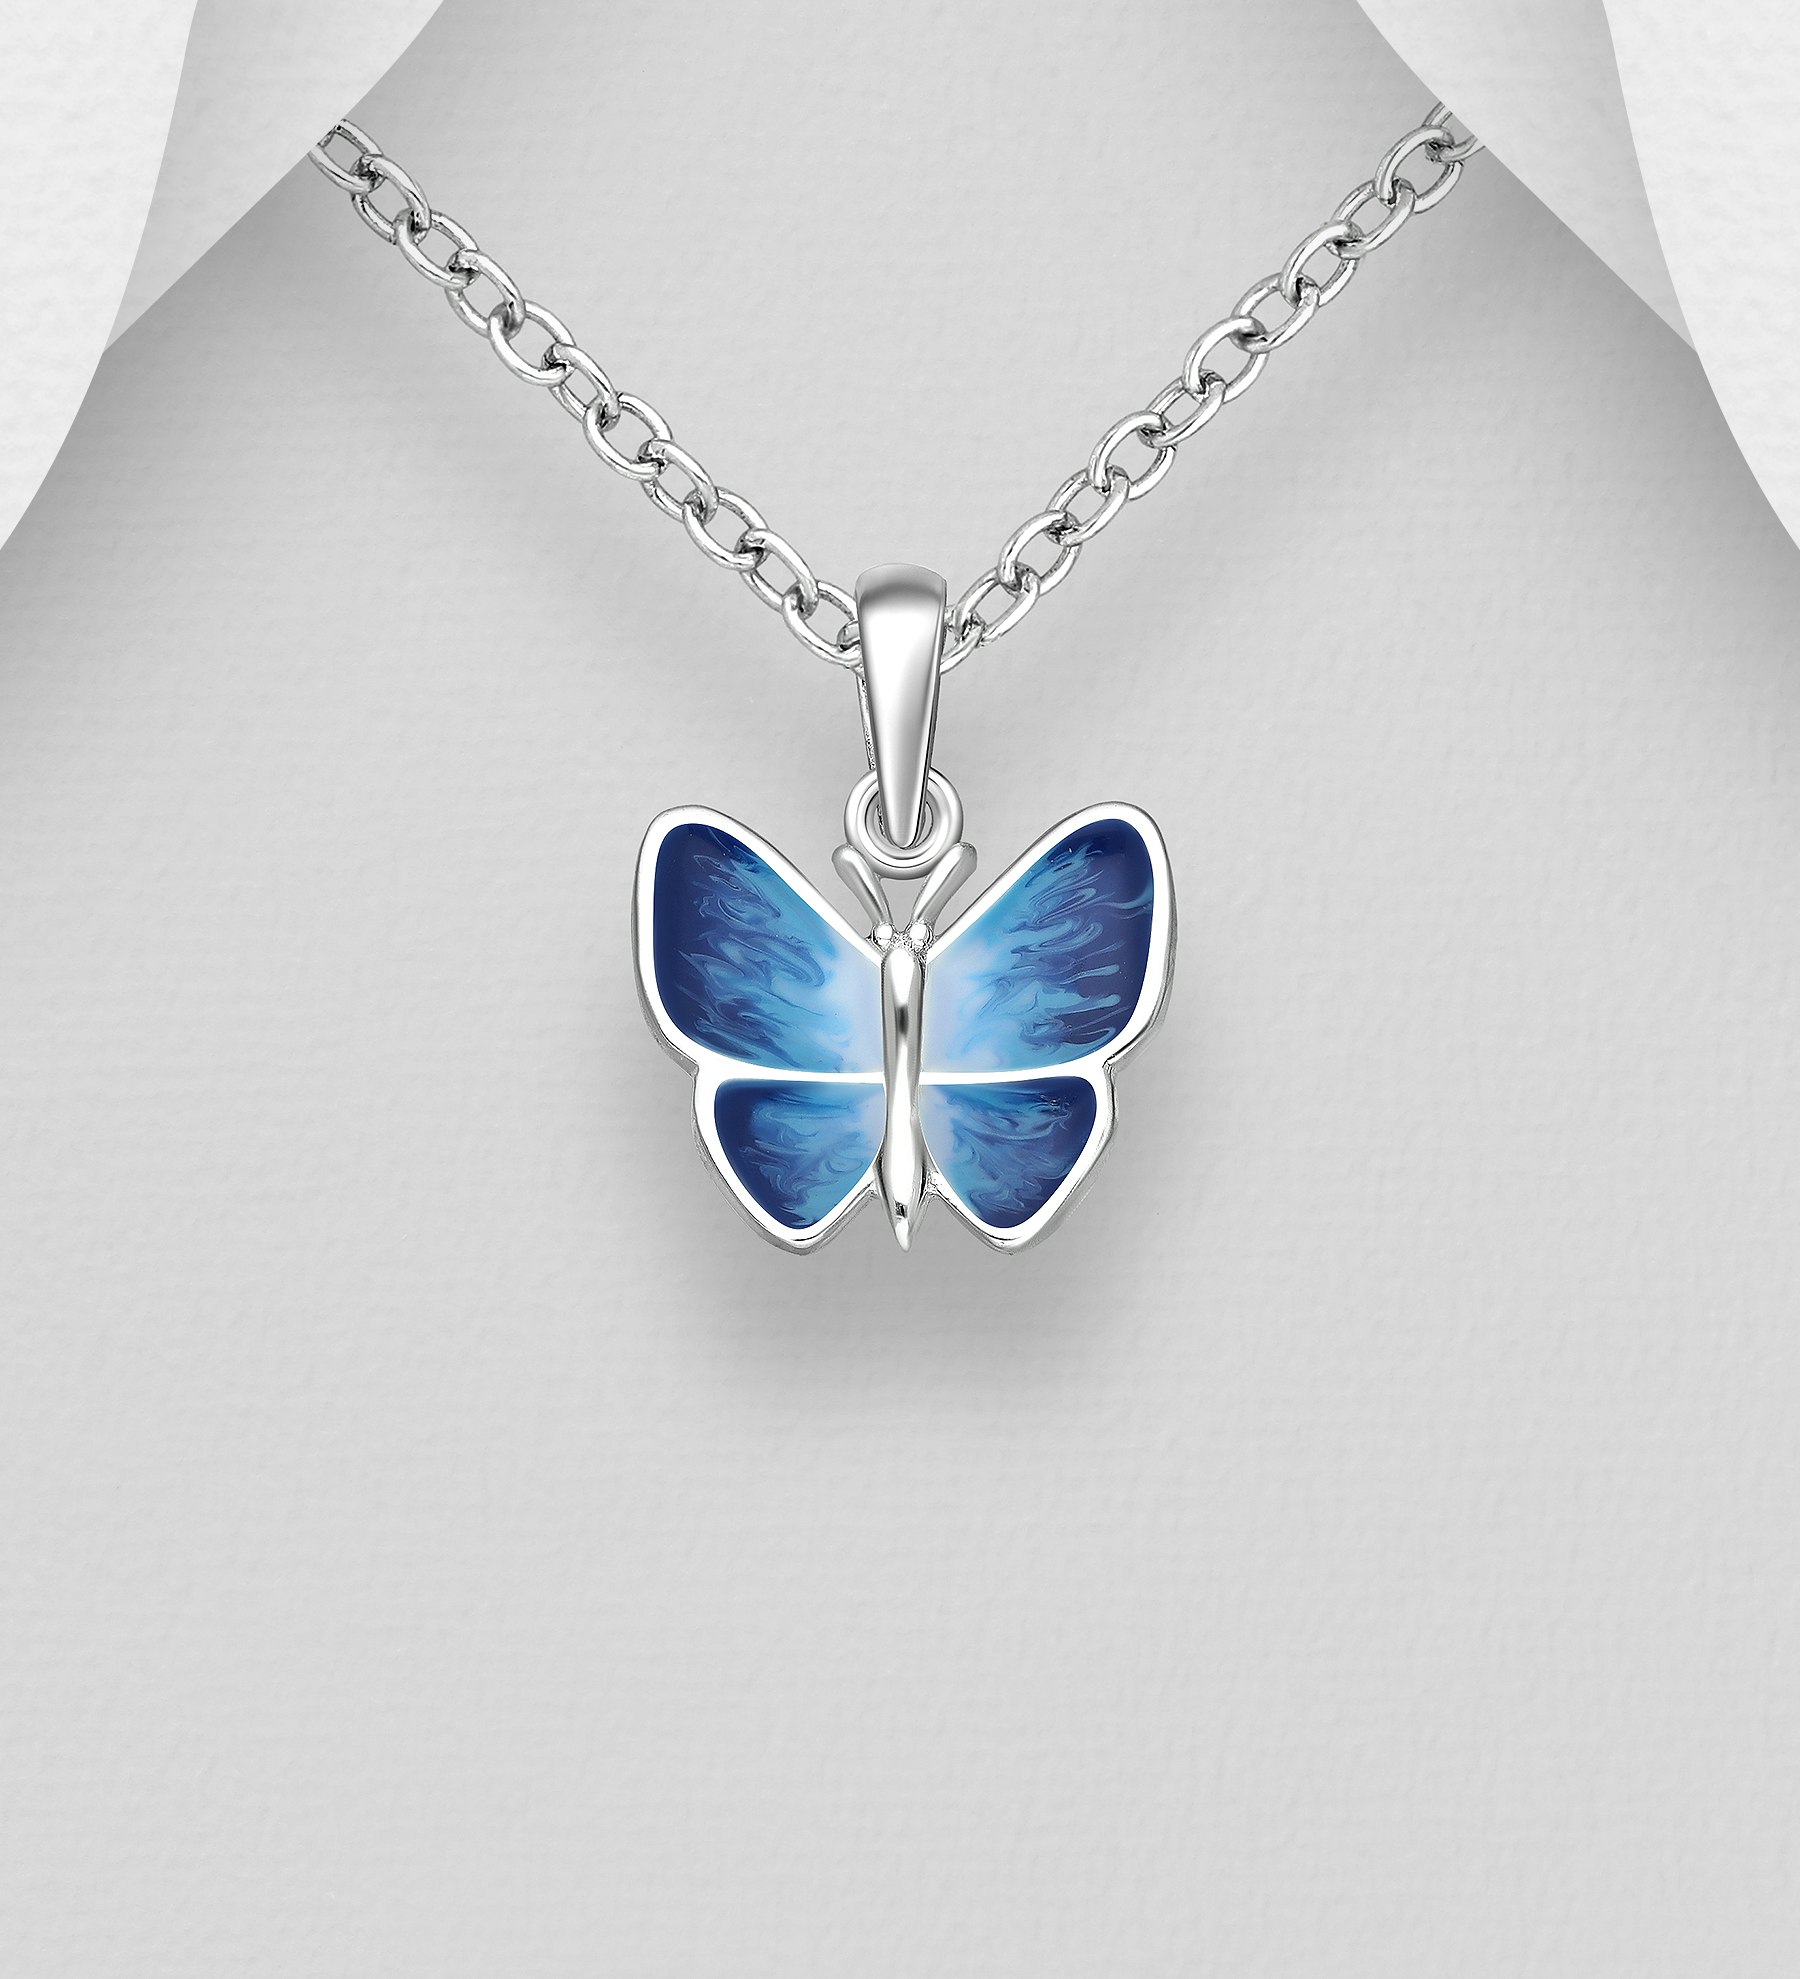 Doppresent flicka - Barnhalsband blå Fjäril i äkta silver